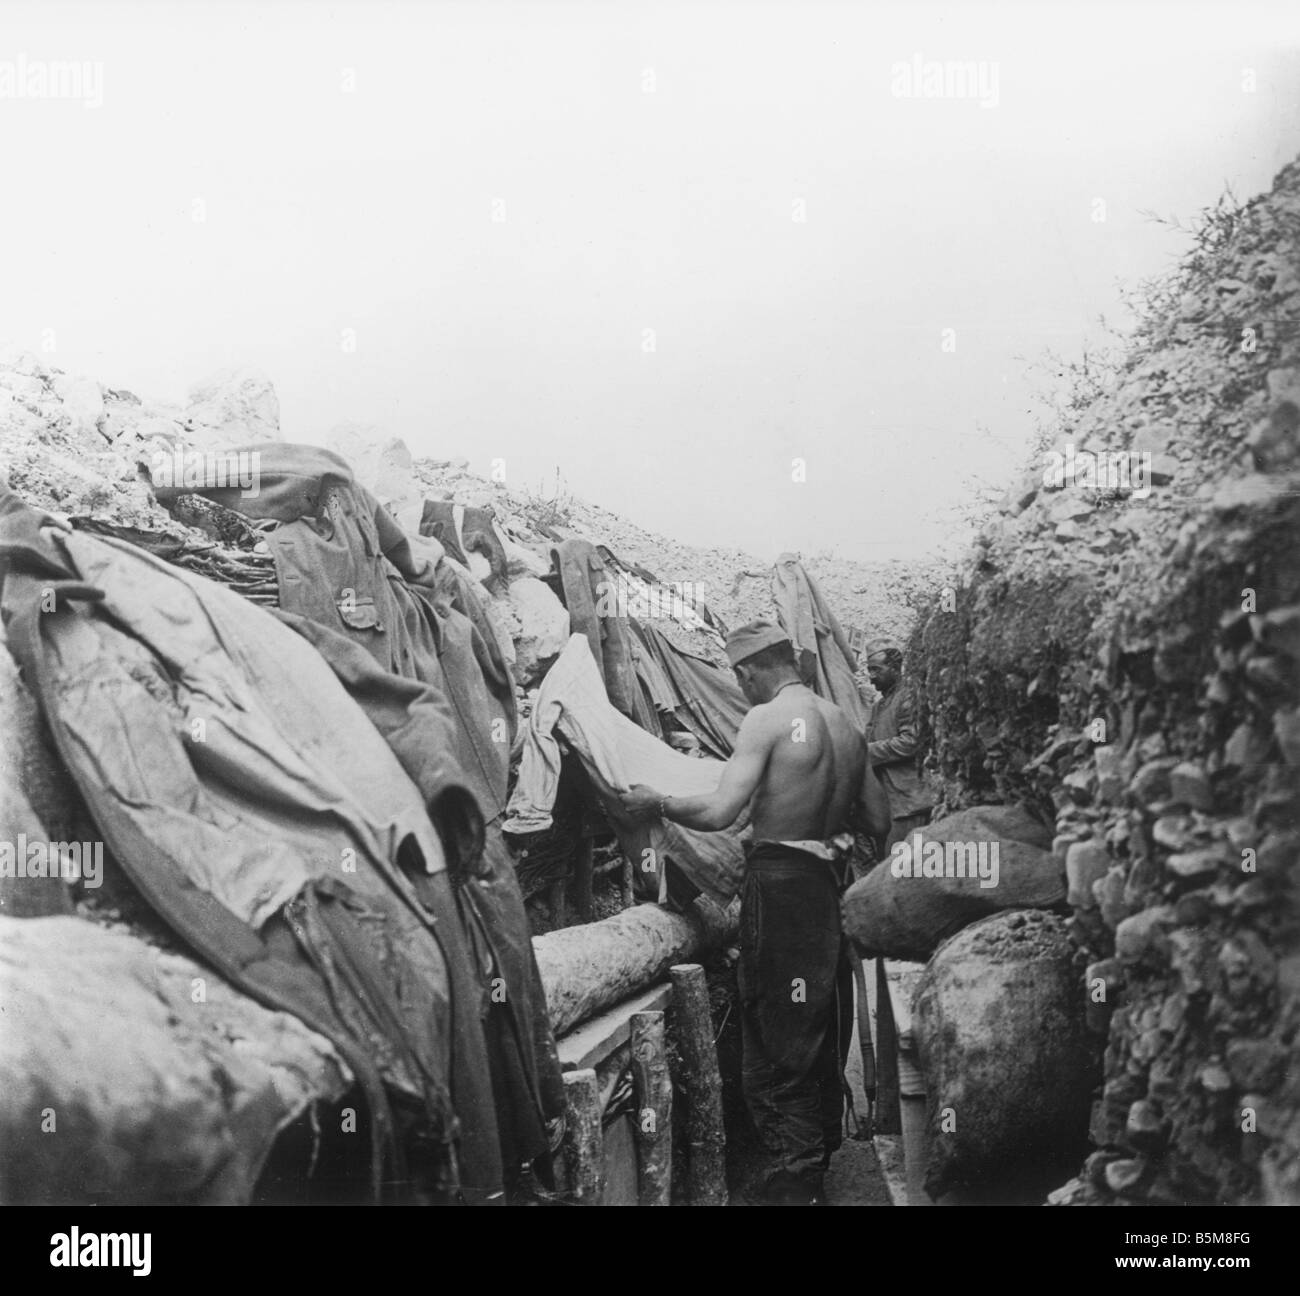 2 G55 F1 1917 19 Soldat sucht Läuse WWI Geschichte Weltkrieg ein Frankreich Trench Warfare A französischer Soldat Läuse aus entfernt Stockfoto